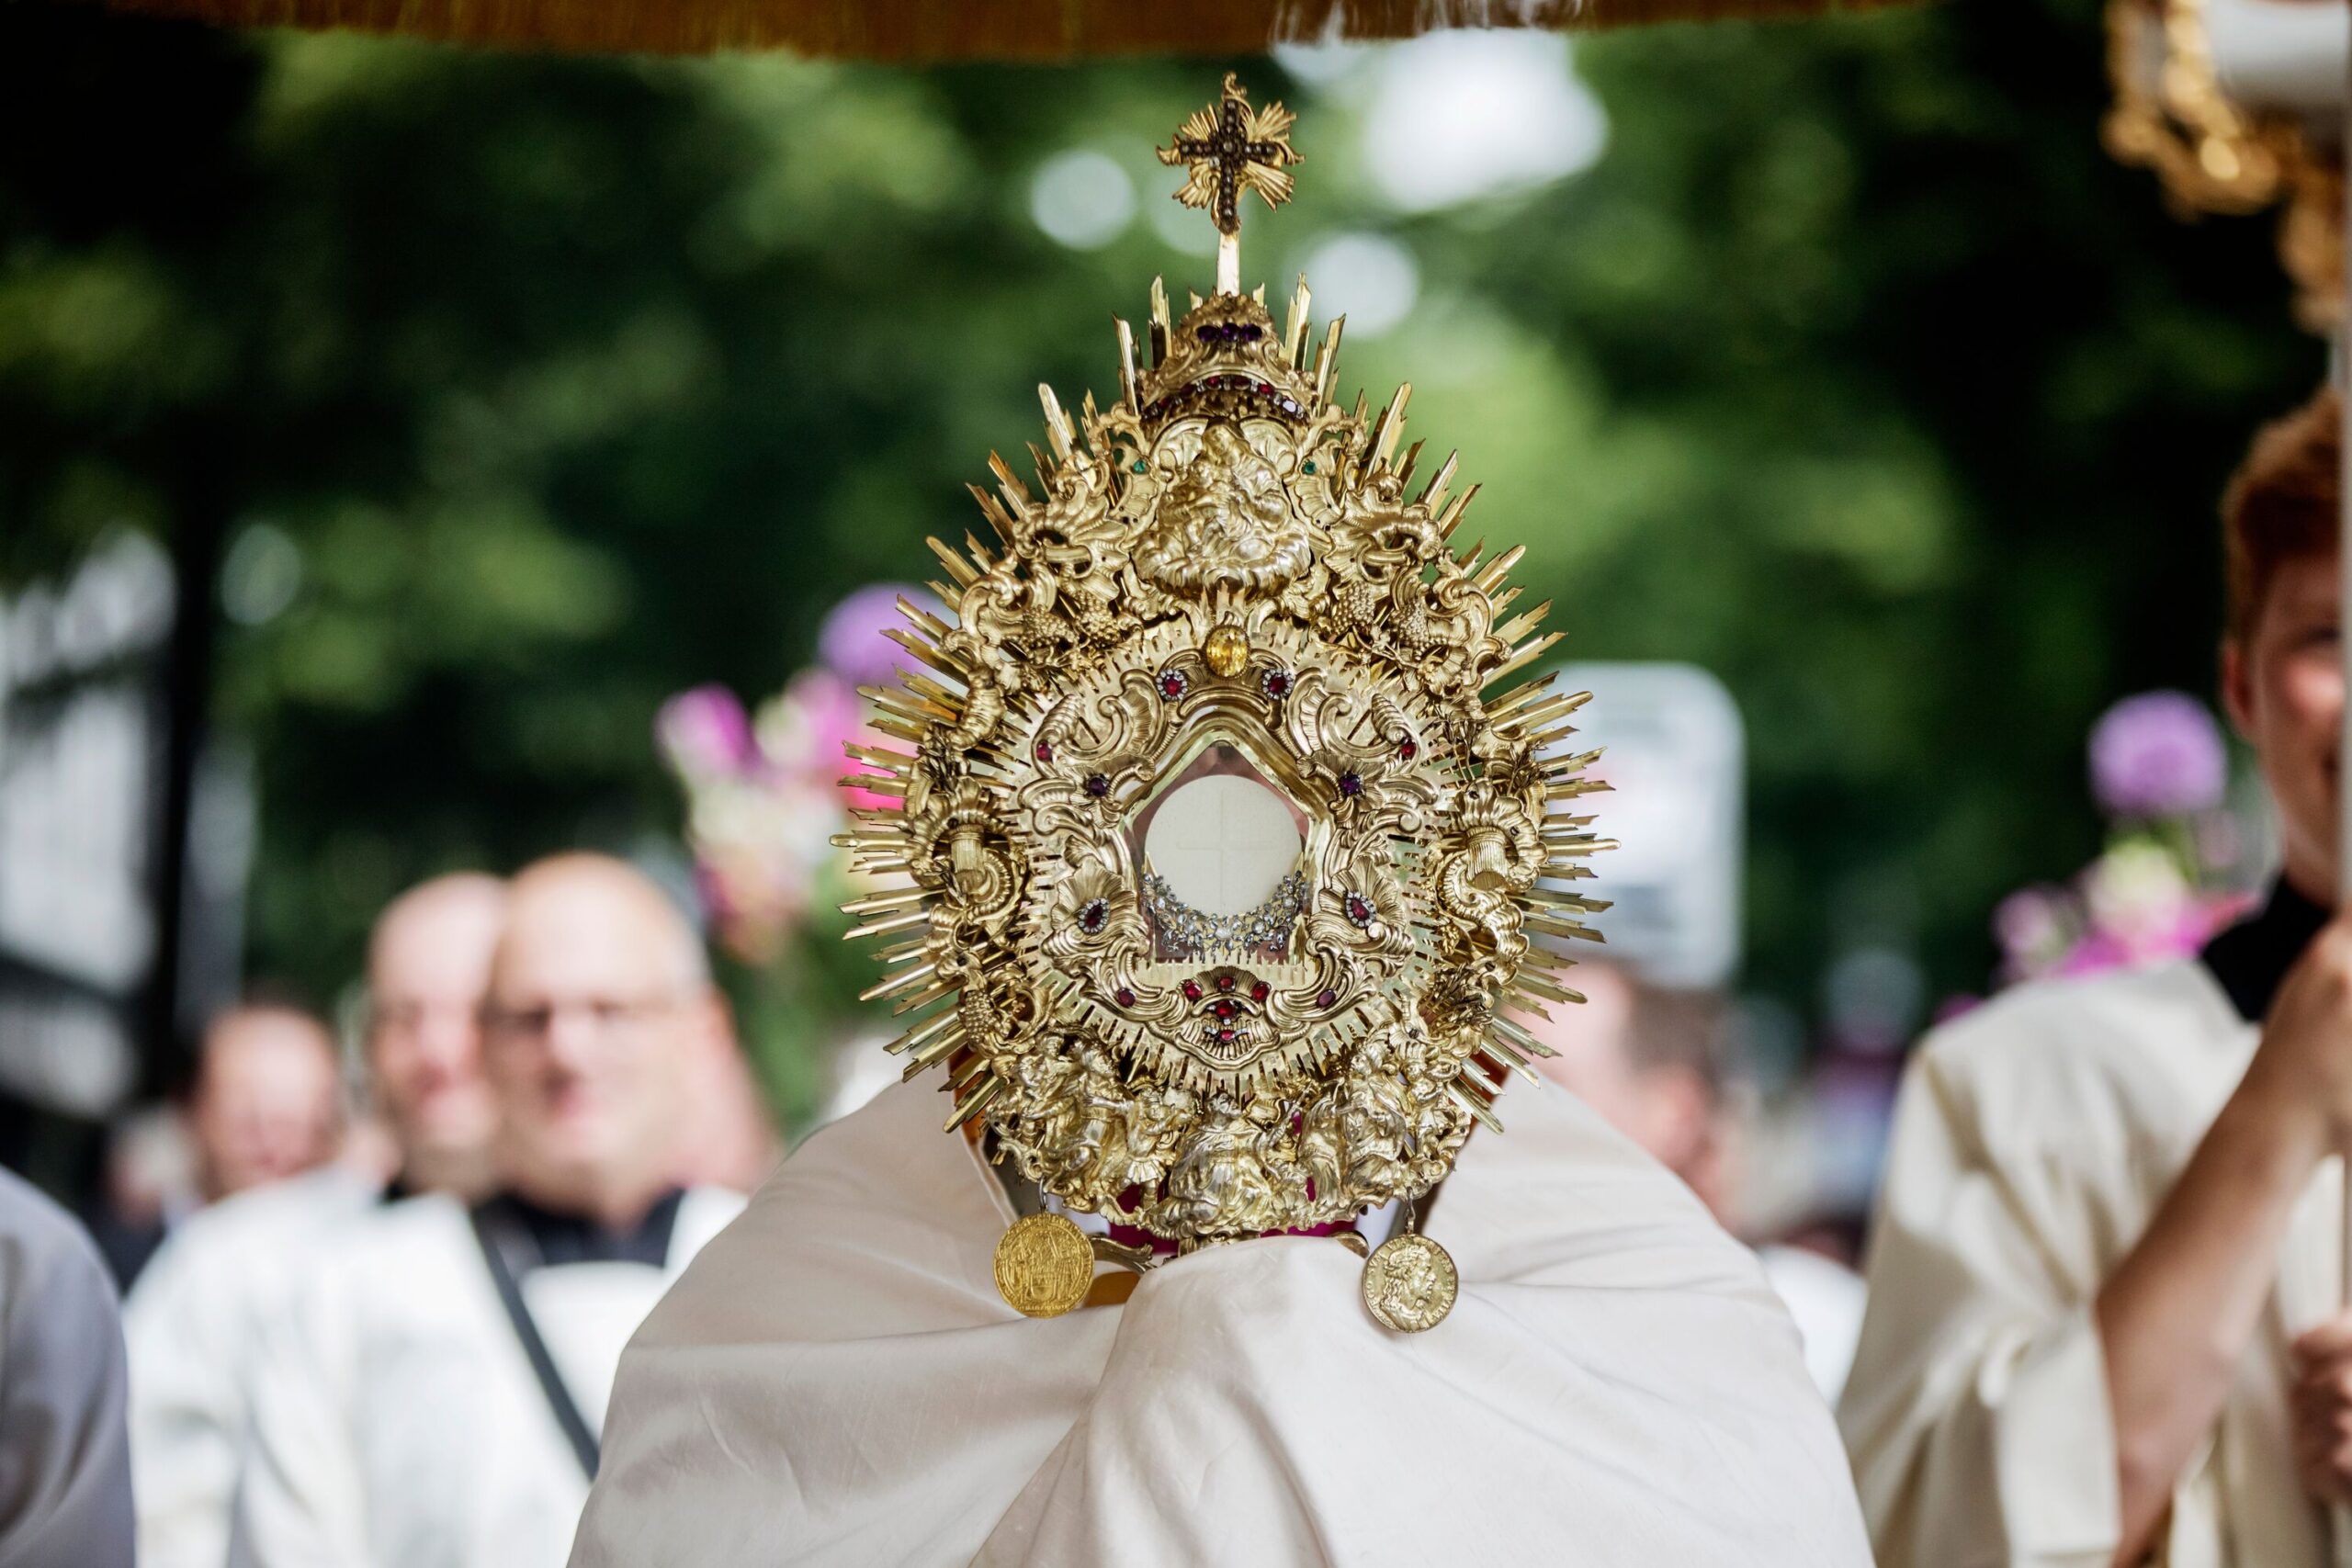 Um den Leib Christi sehen zu können, begleitet die Prozession zu Fronleichnam oft eine Monstranz